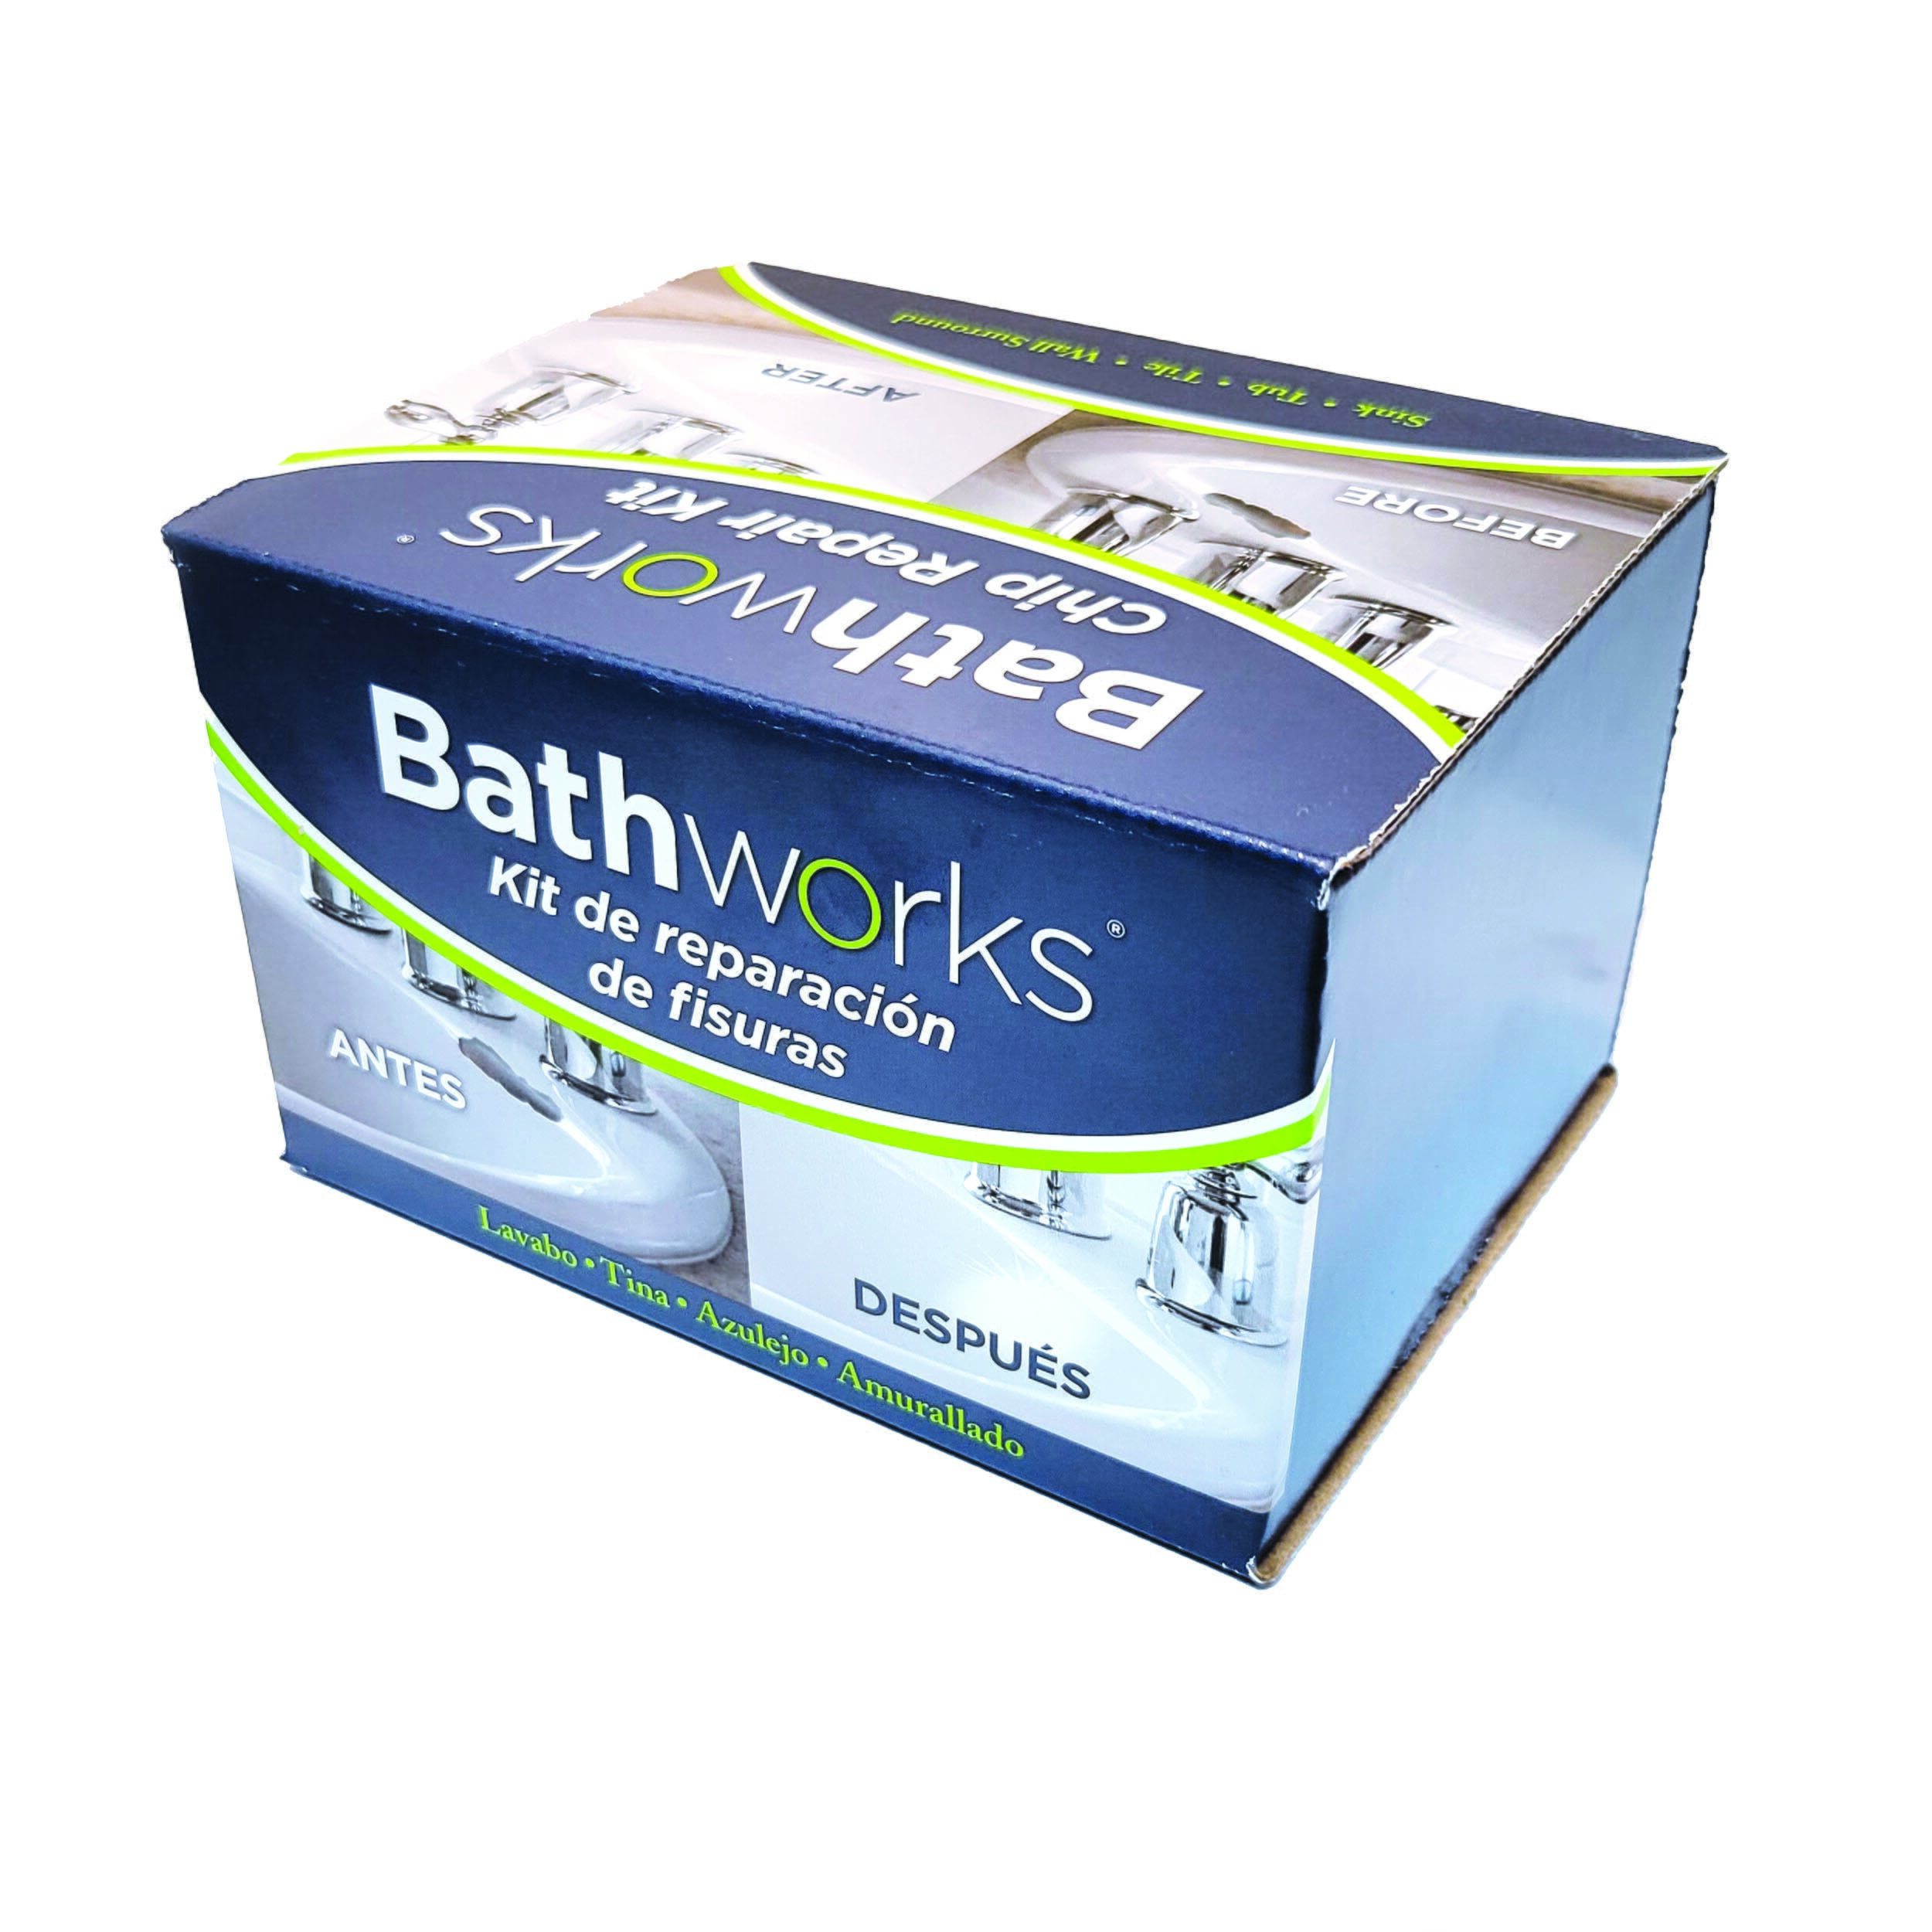 Bathworks CRC-205 4 oz. Black Tub and Tile Chip Repair Kit